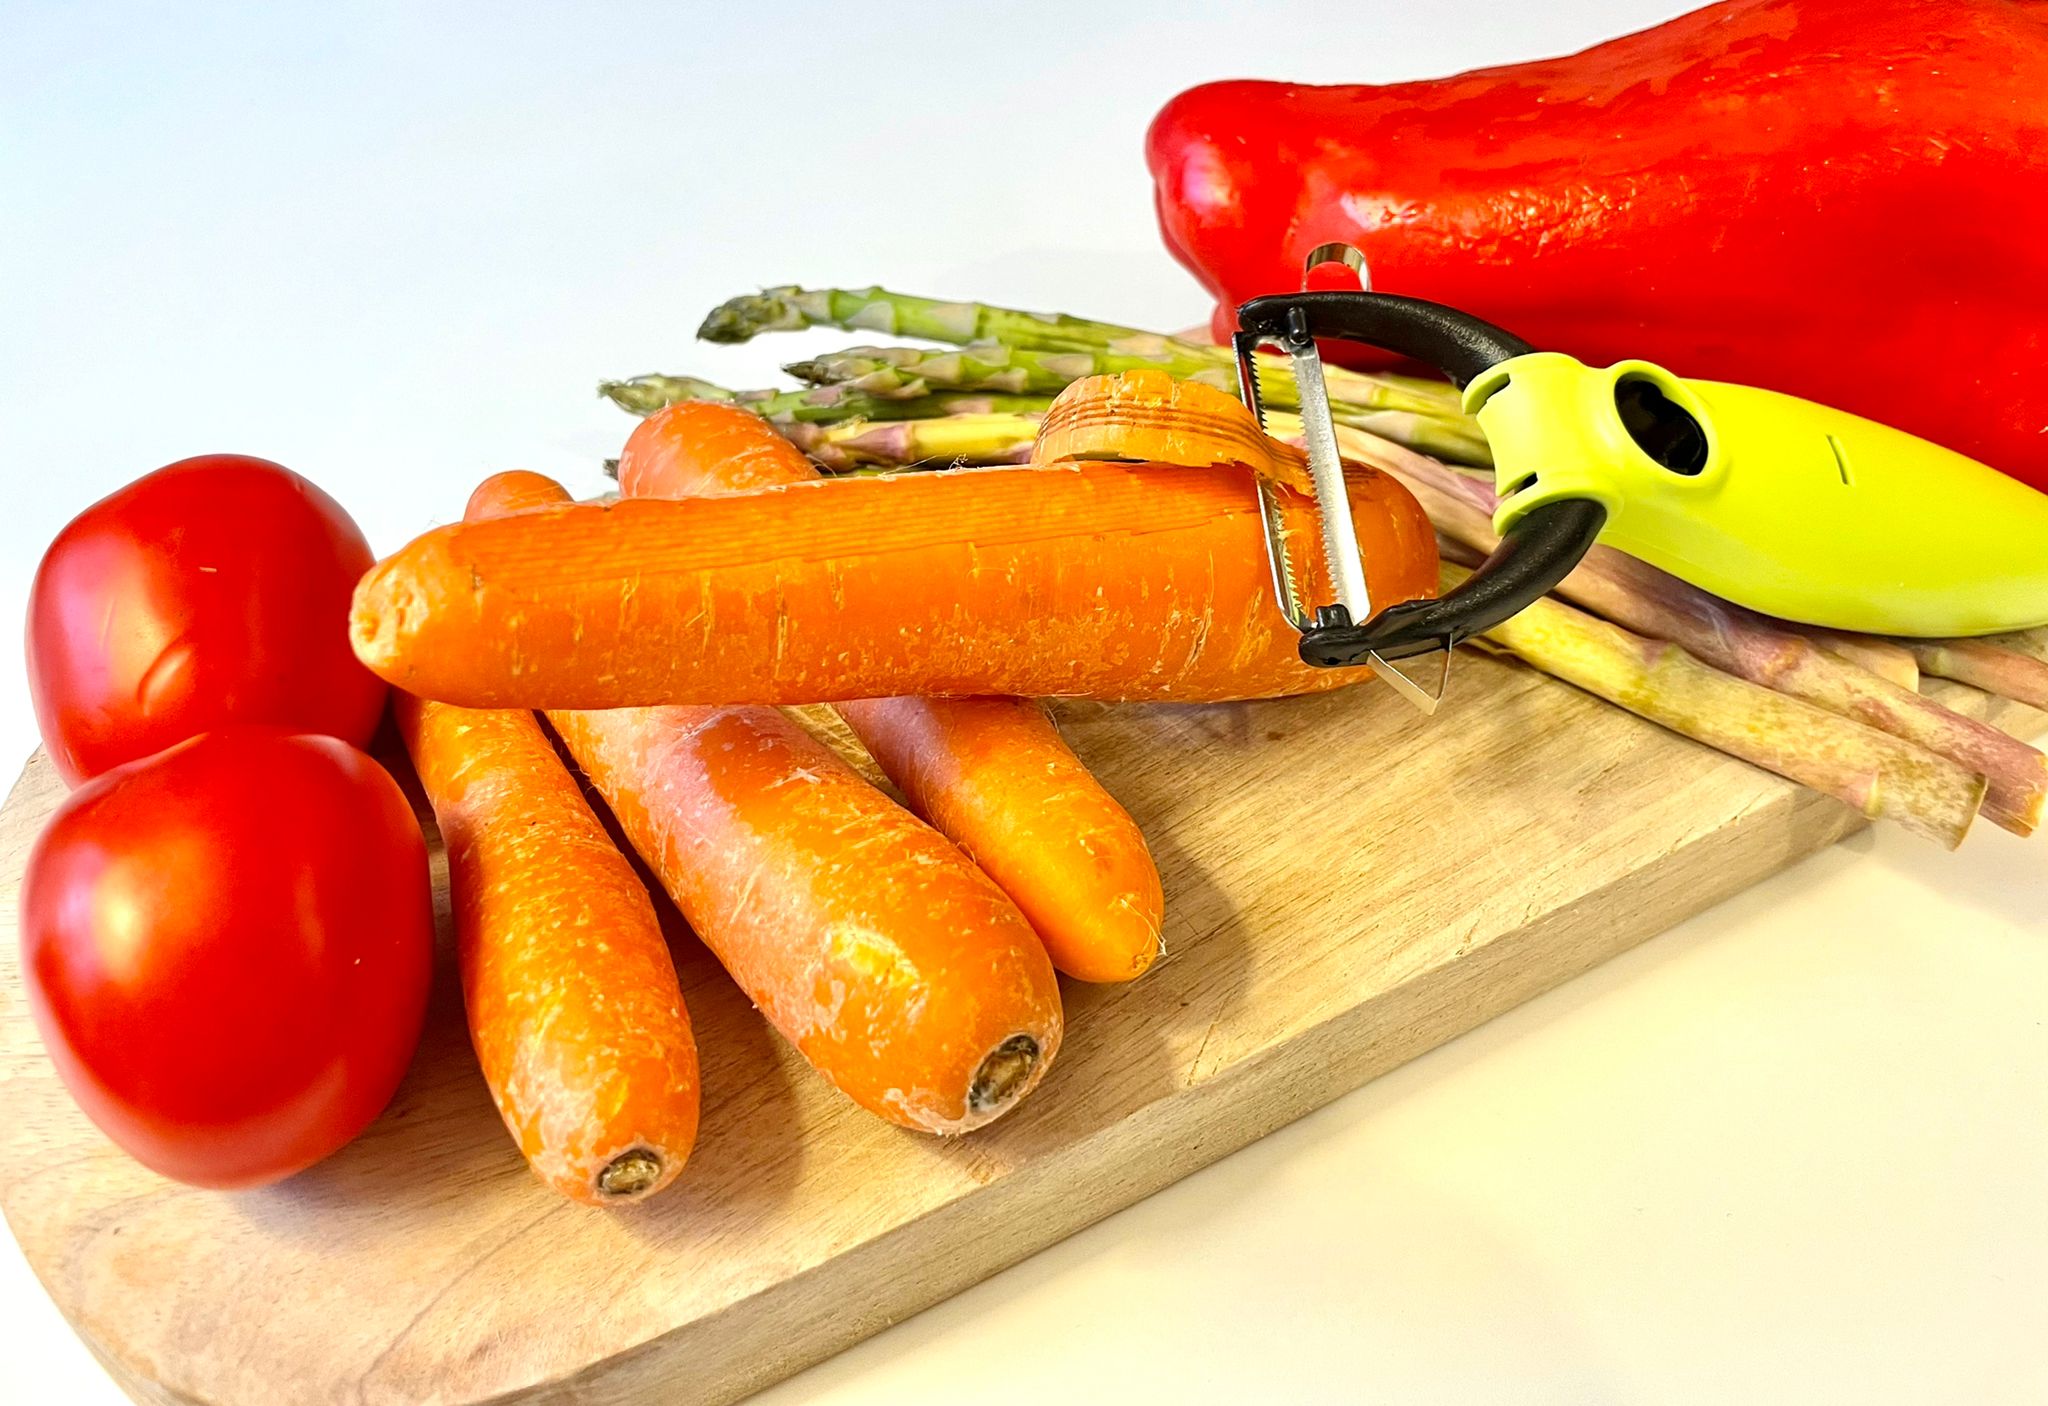 L'éplucheur peaux fines pour peler vos fruits et légumes le plus